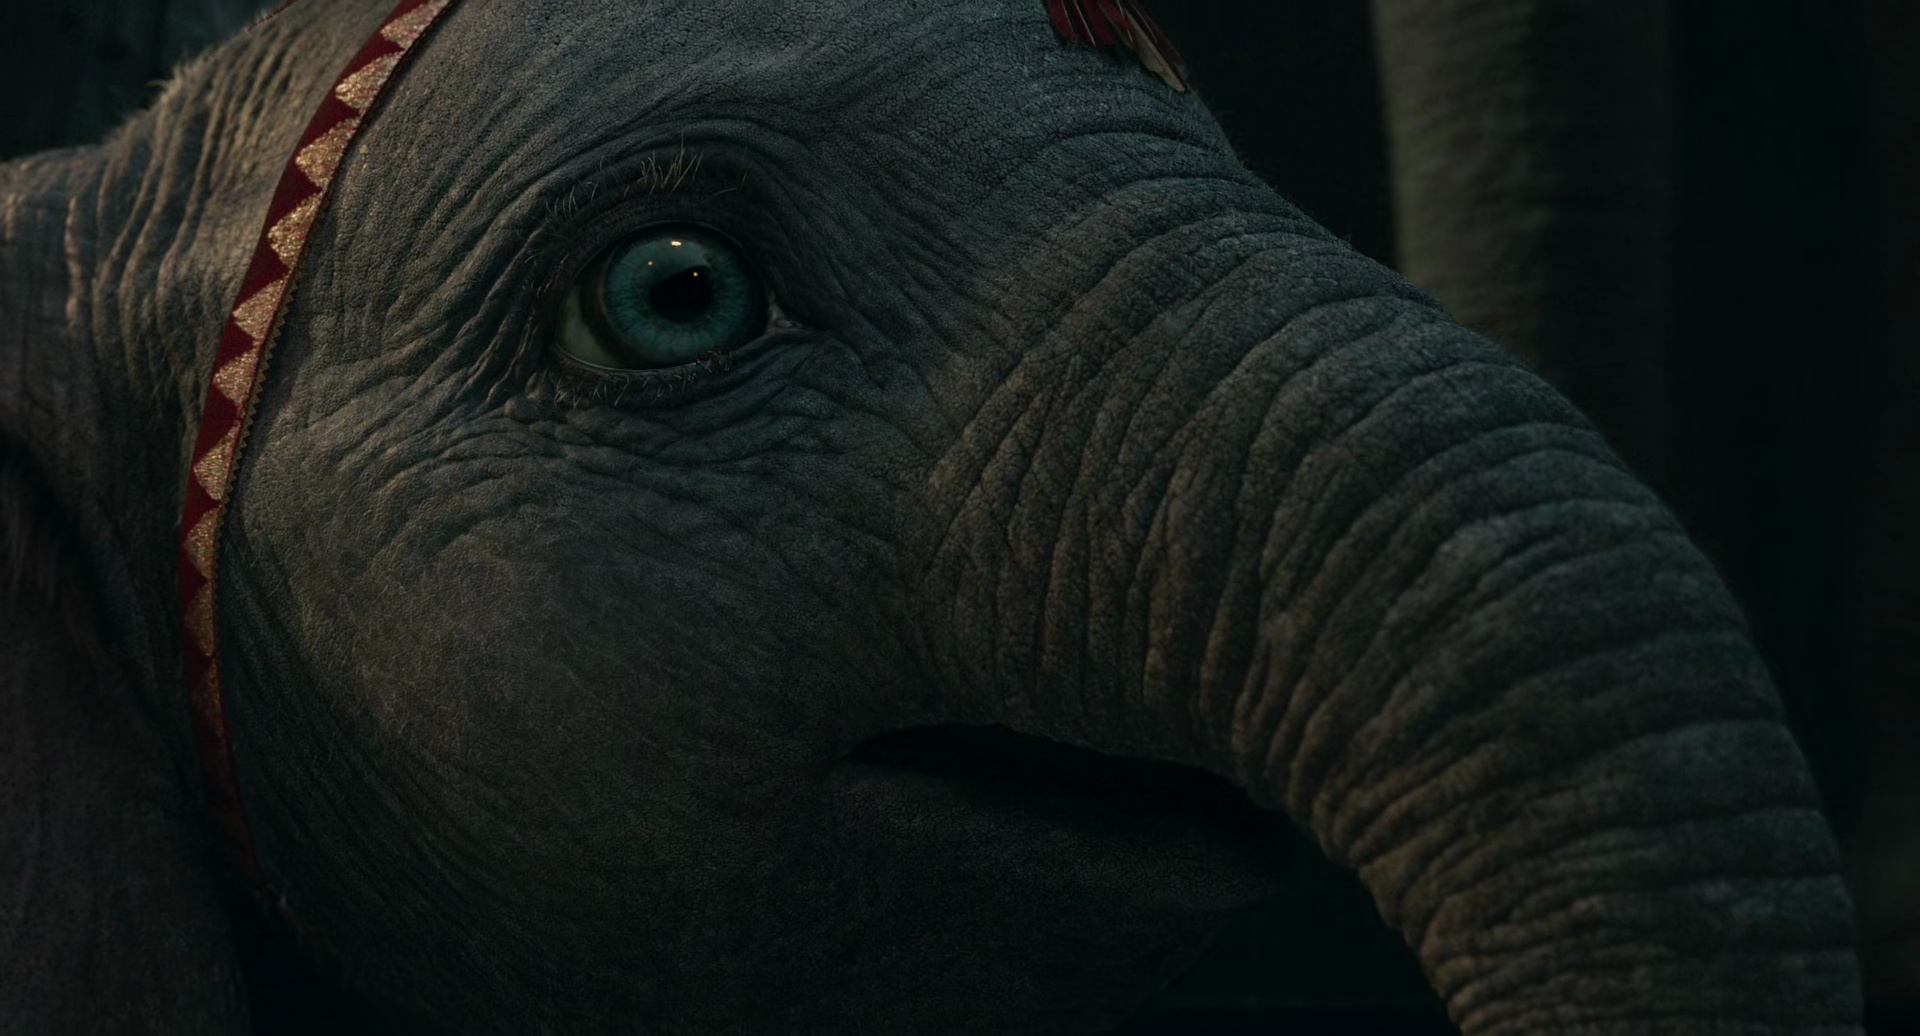 Dumbo (2019)